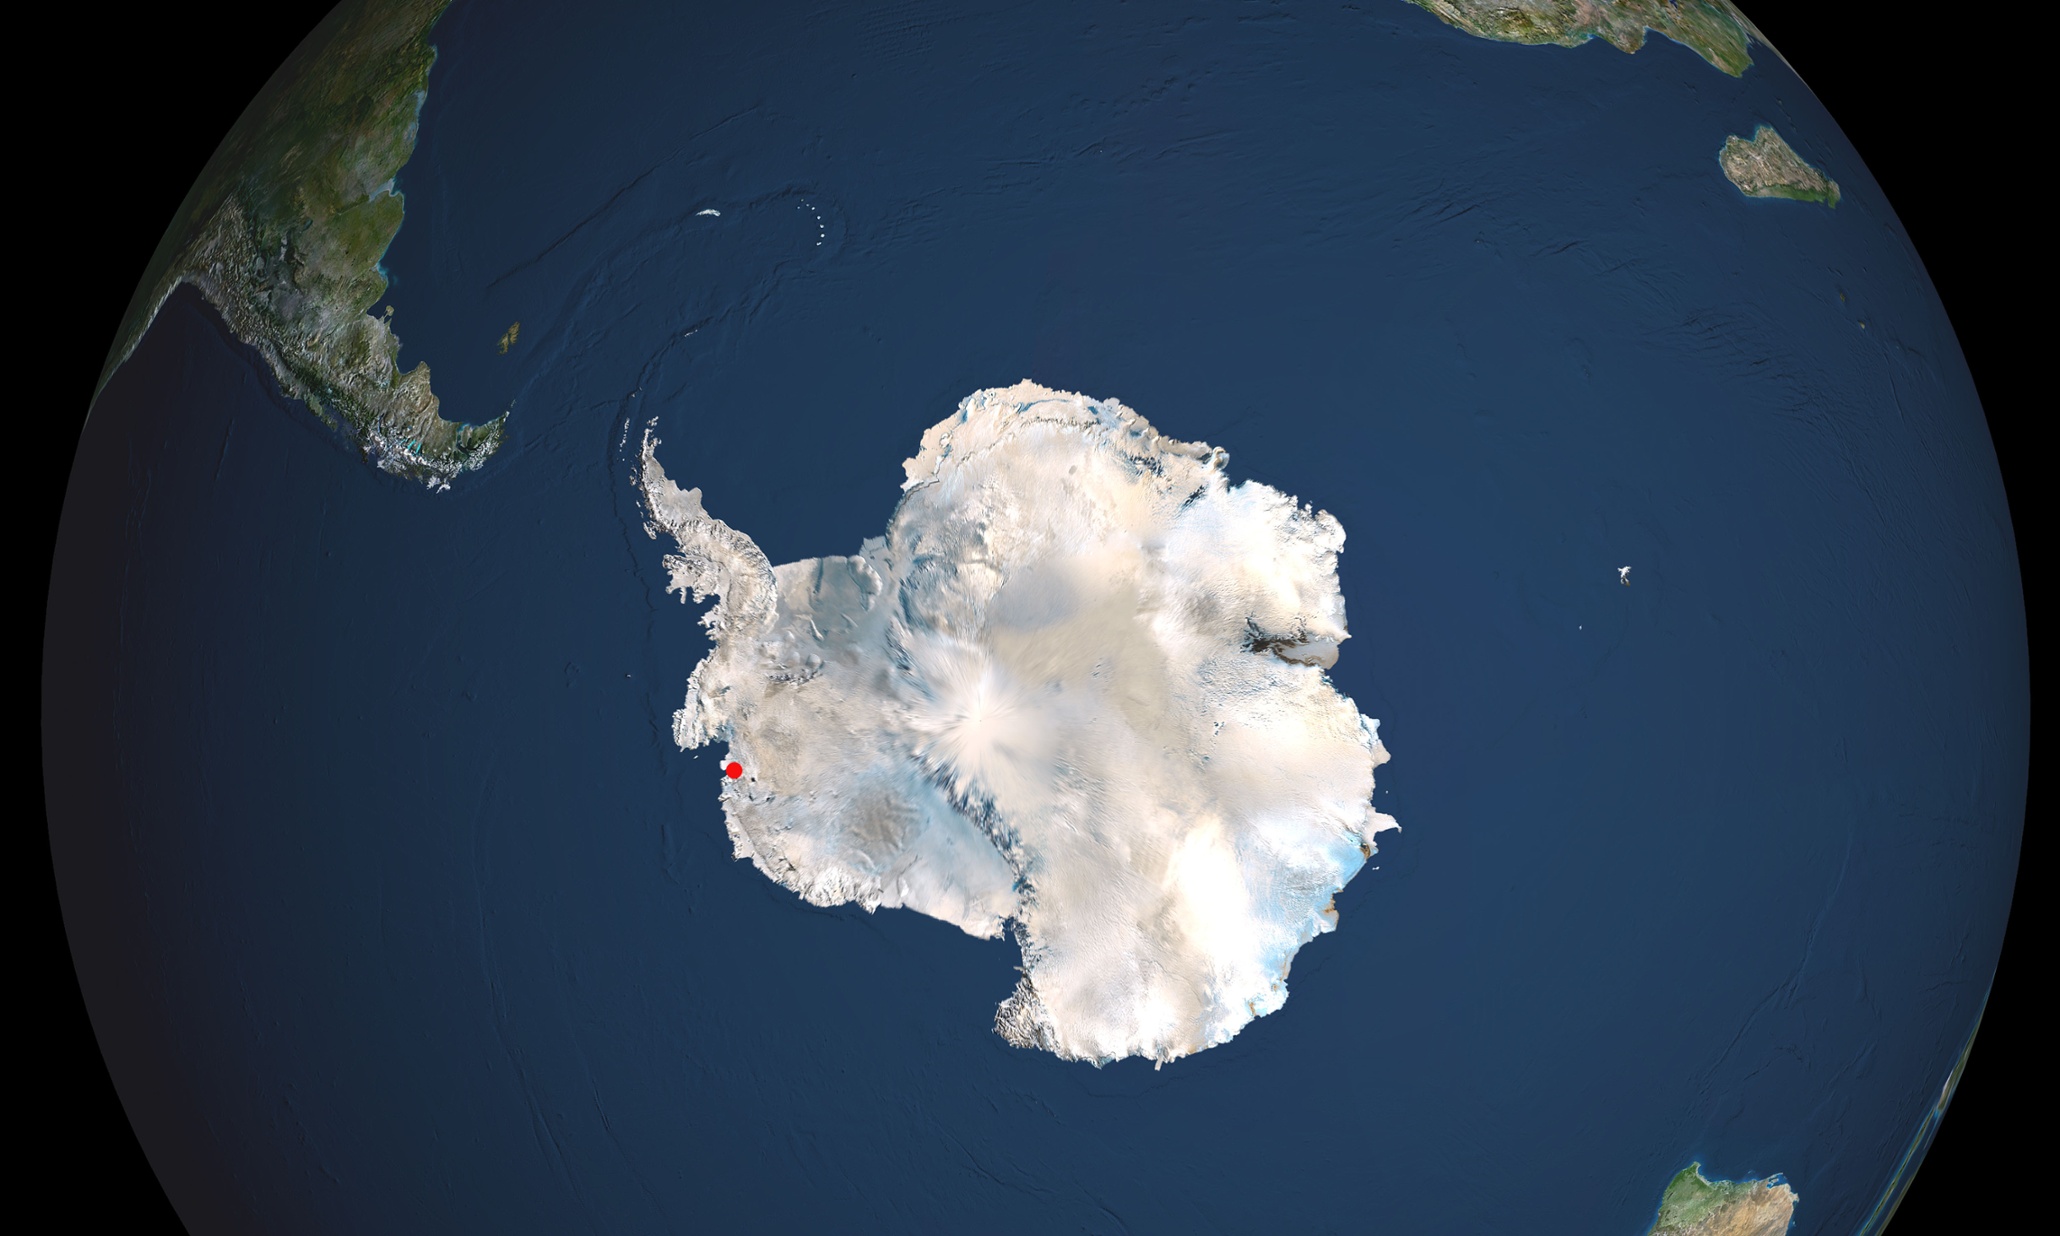 Южный полюс земли находится вблизи